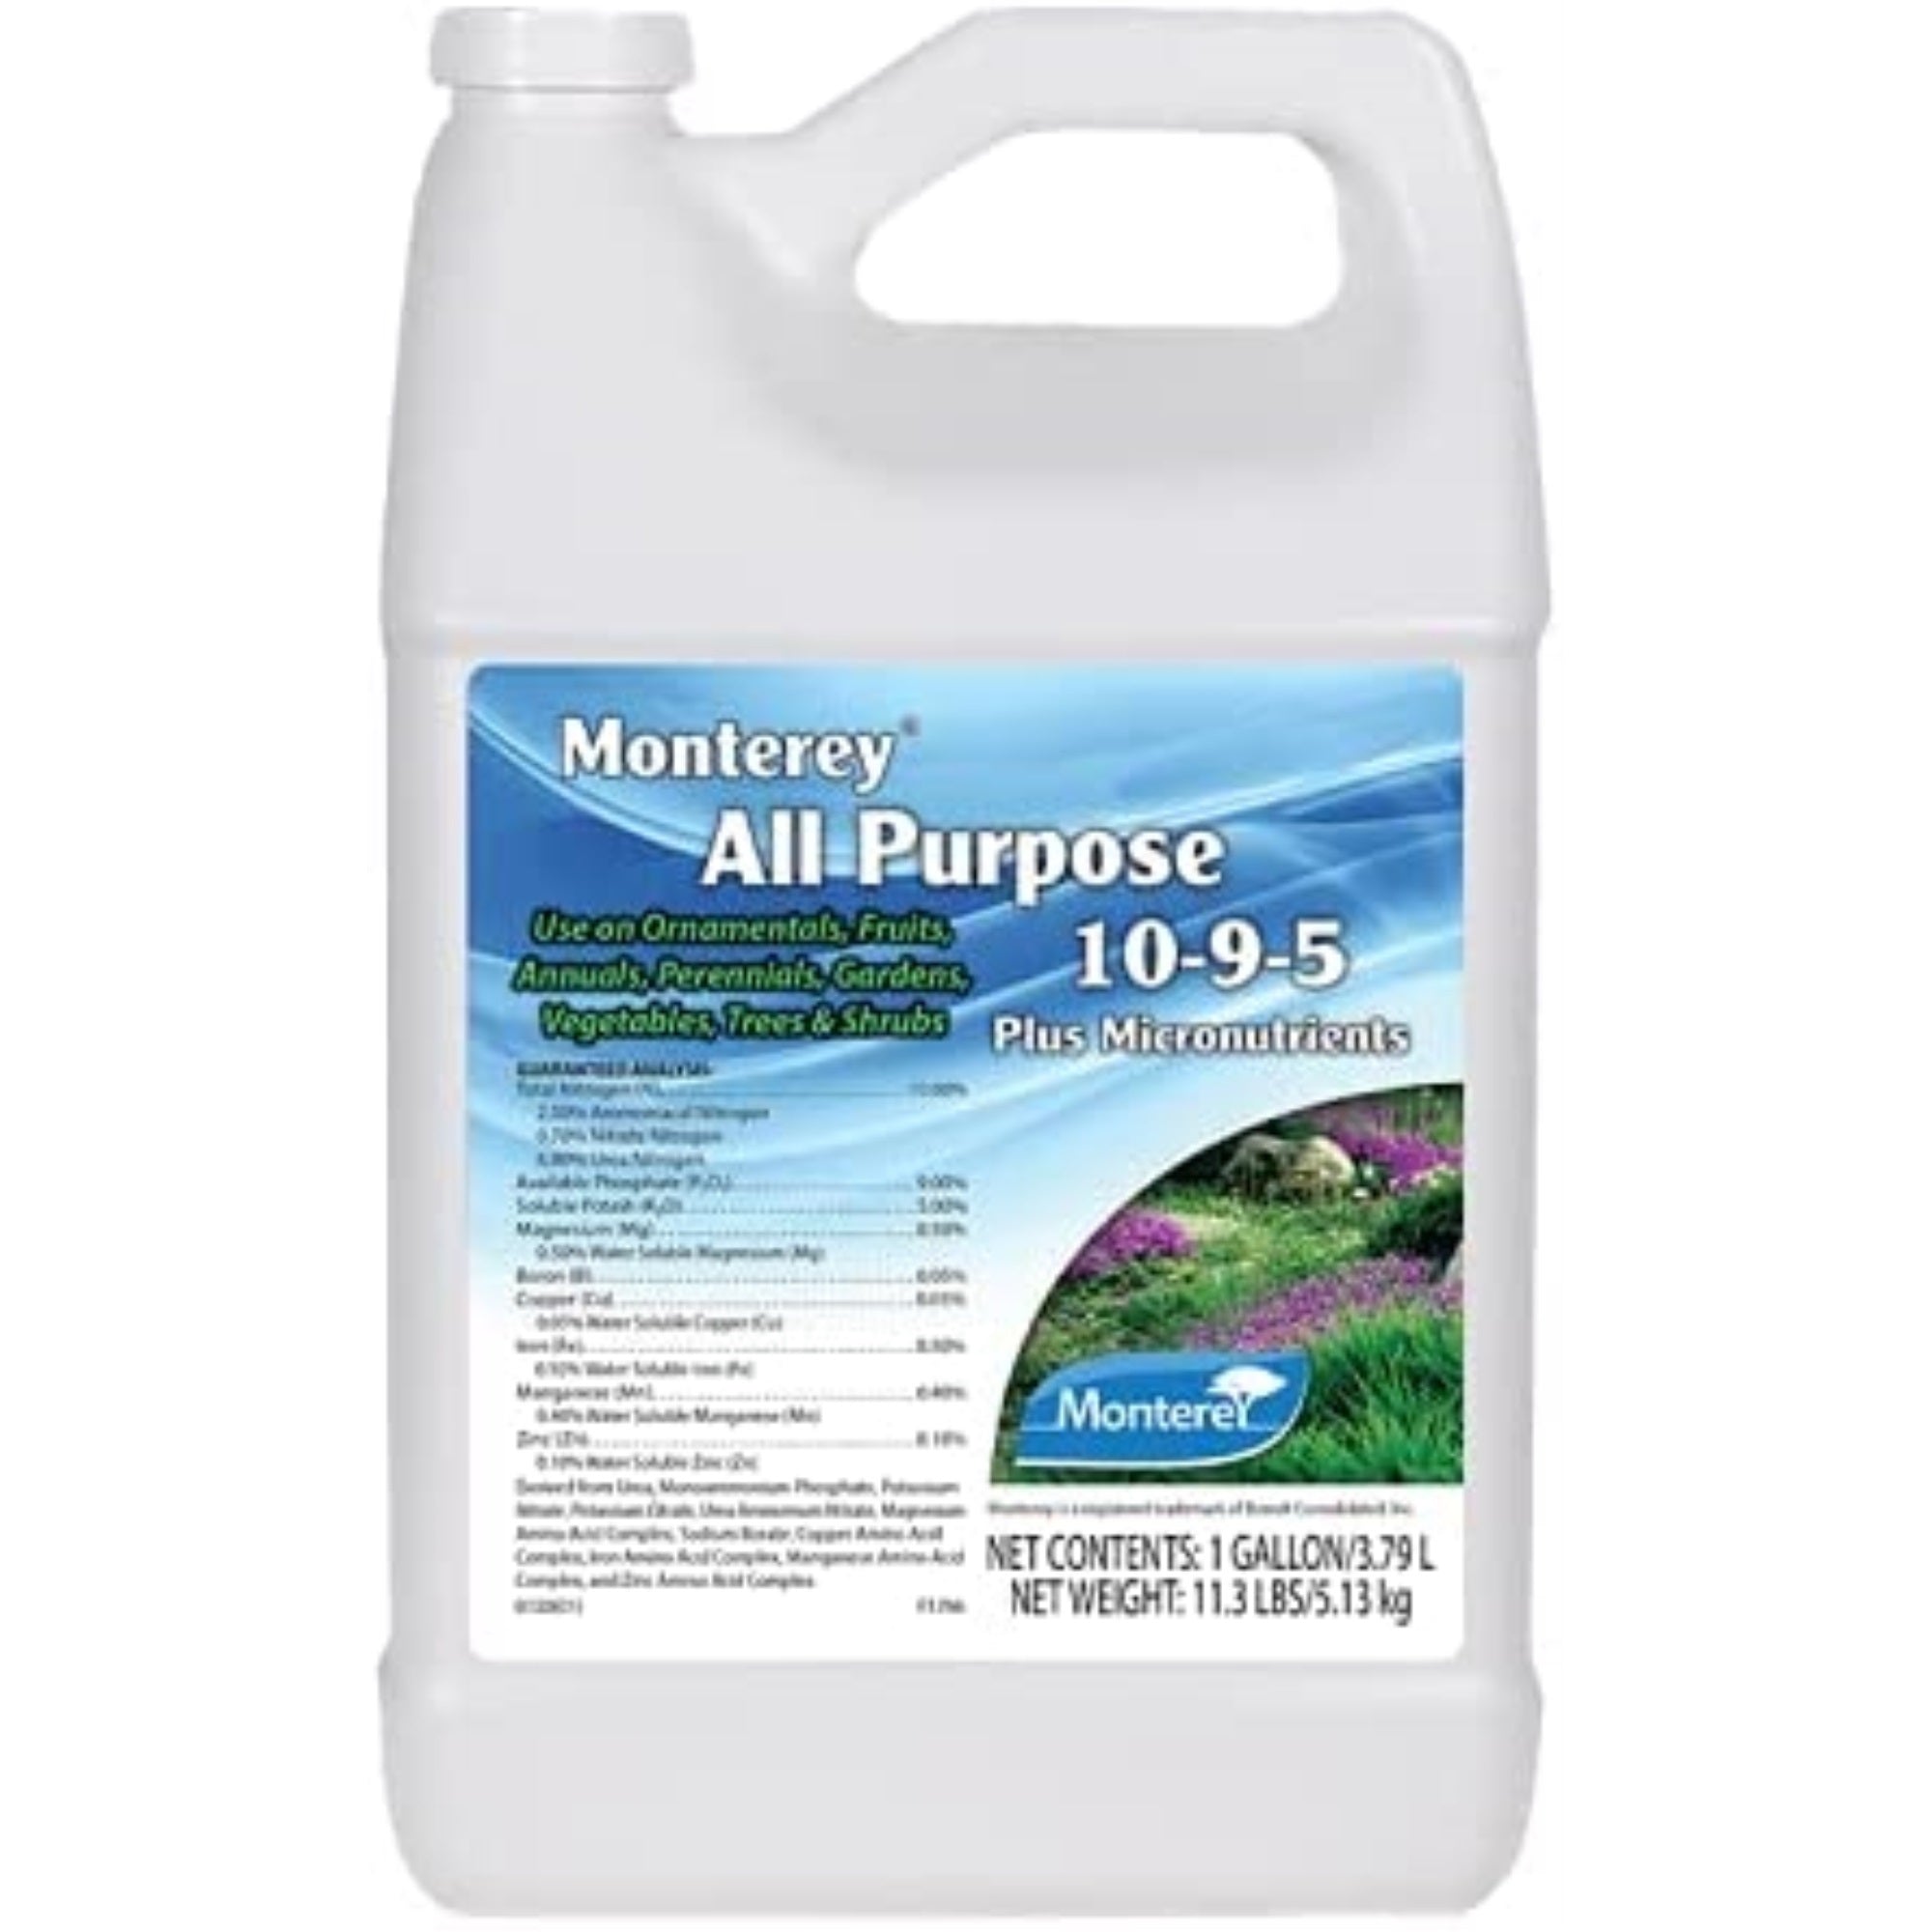 Monterey All Purpose 10-9-5 Fertilizer + Micronutrients, 1 Gallon